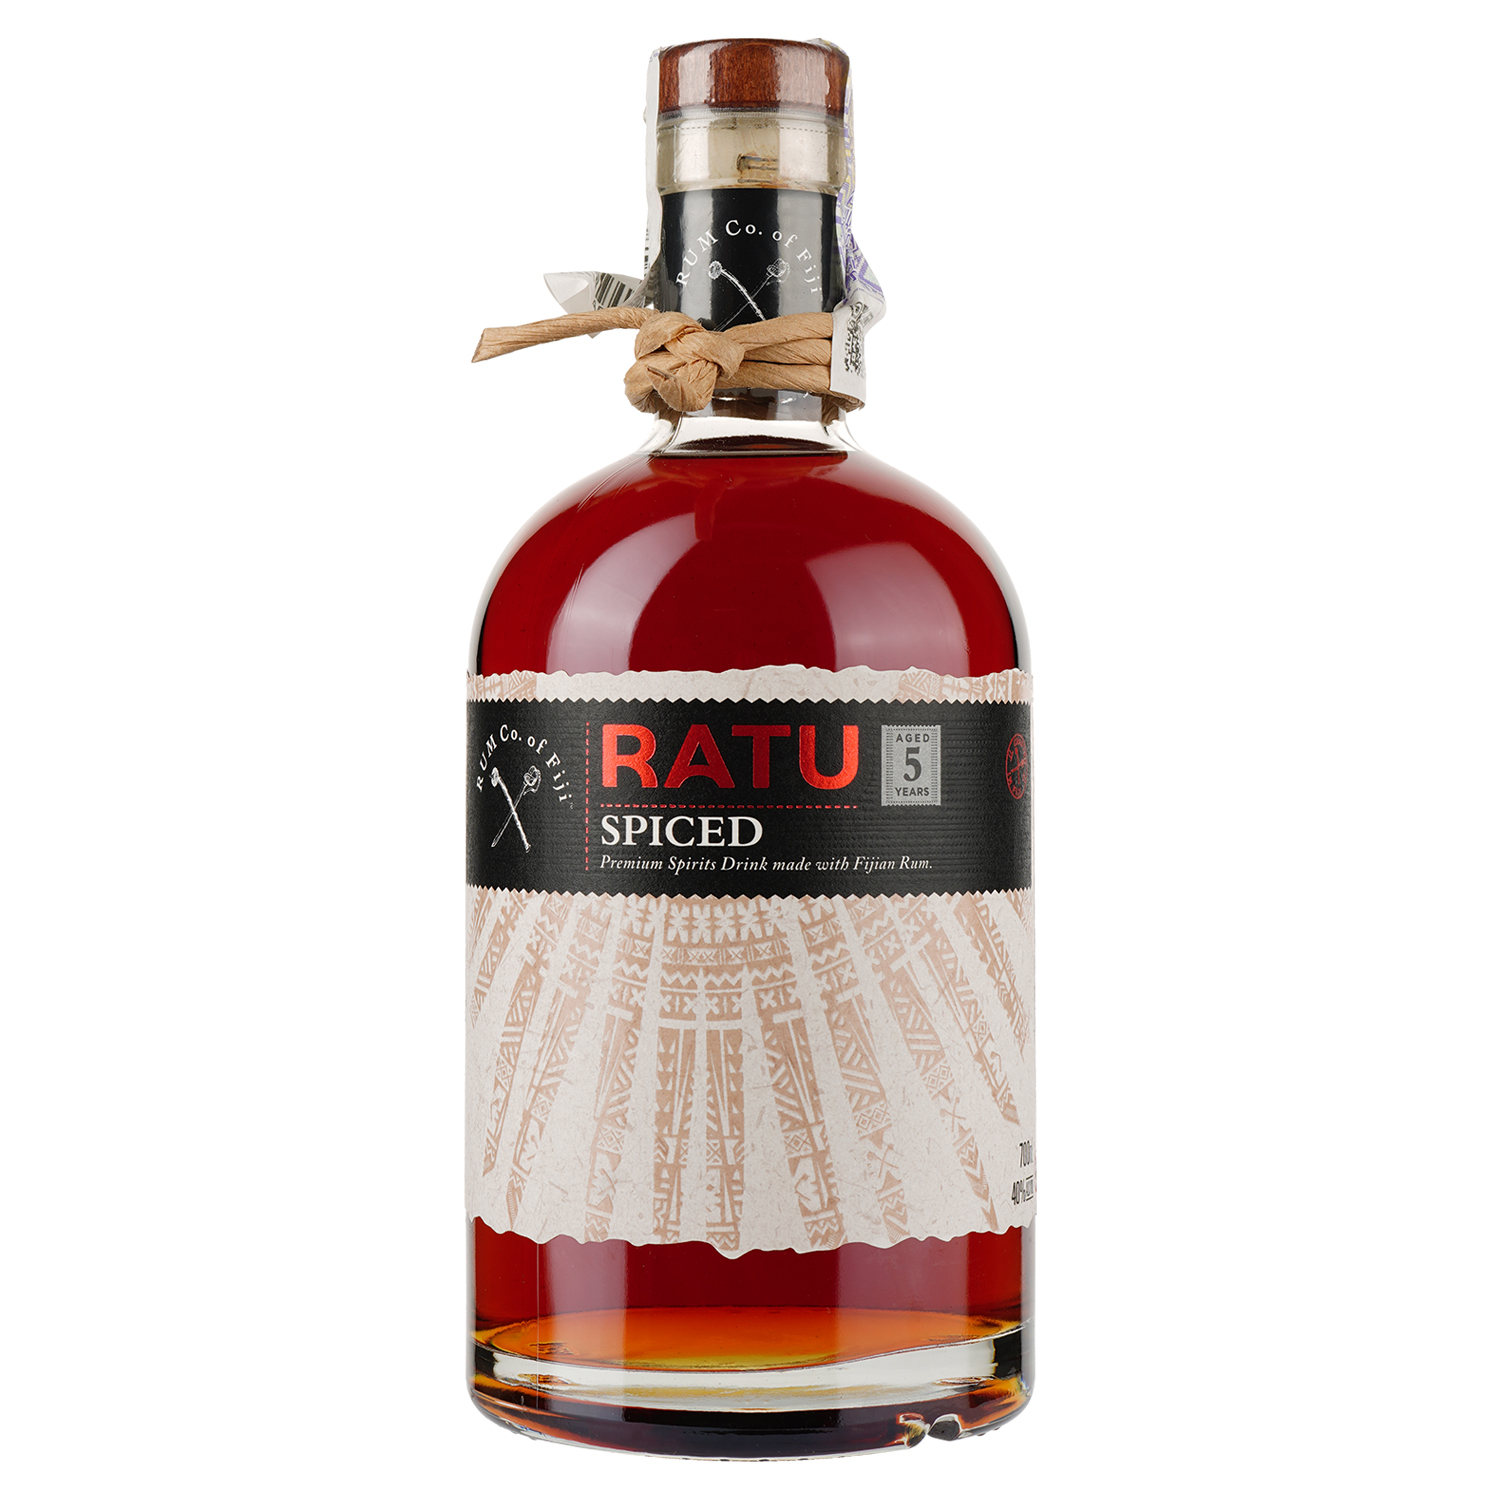 Ромовий напій Ratu Spiced 5yo, 40%, 0,7 л - фото 1